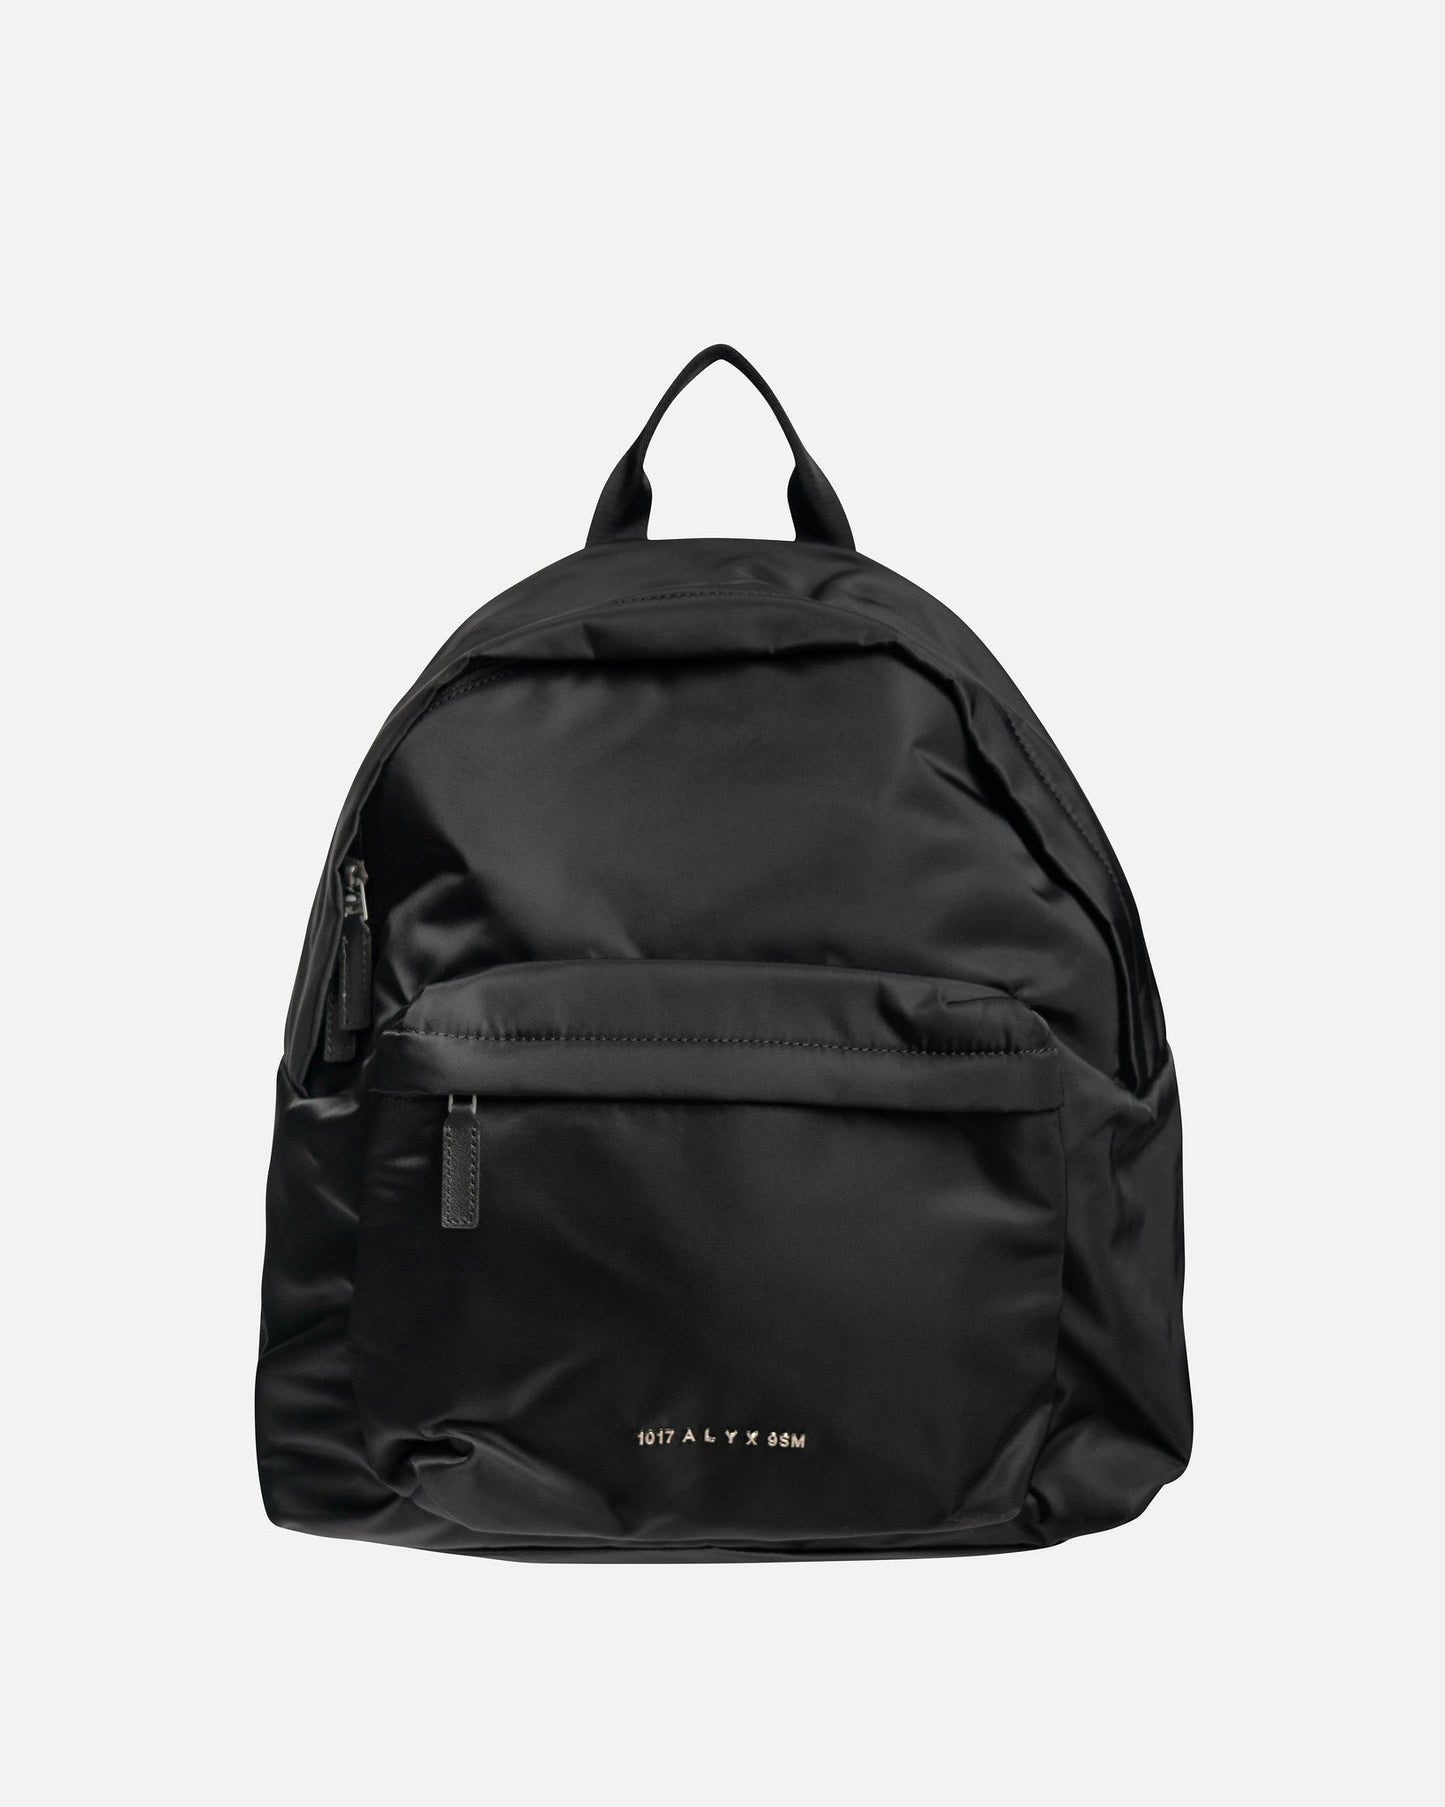 1017 ALYX 9SM Men's Bags Buckle Shoulder Strap Backpack in Black